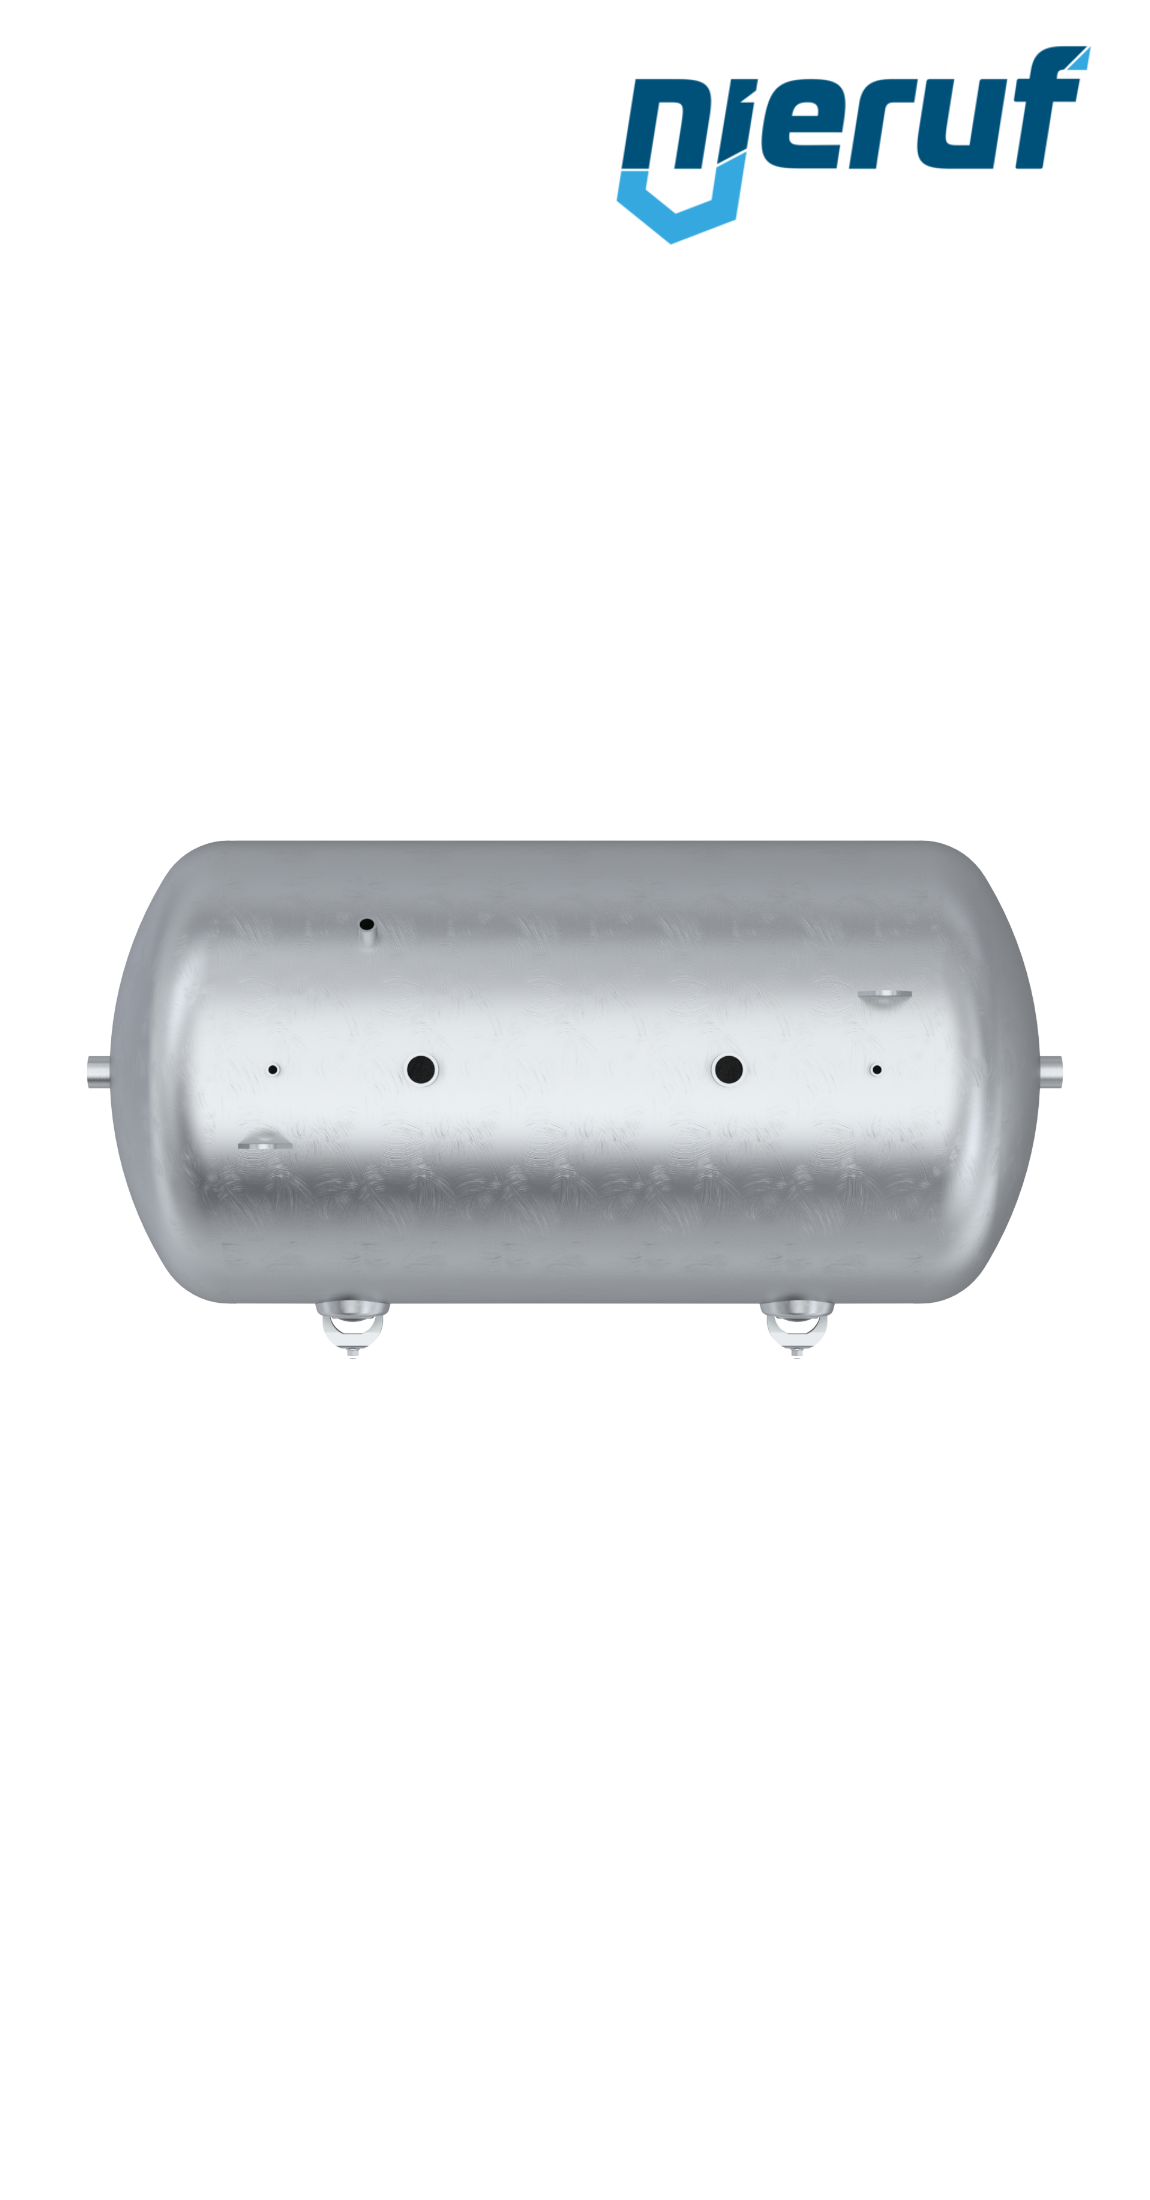 Serbatoio a pressione orizzontale BE01 10000 litri, 0-16 bar, acciaio primerizzato, diametro 1600 mm